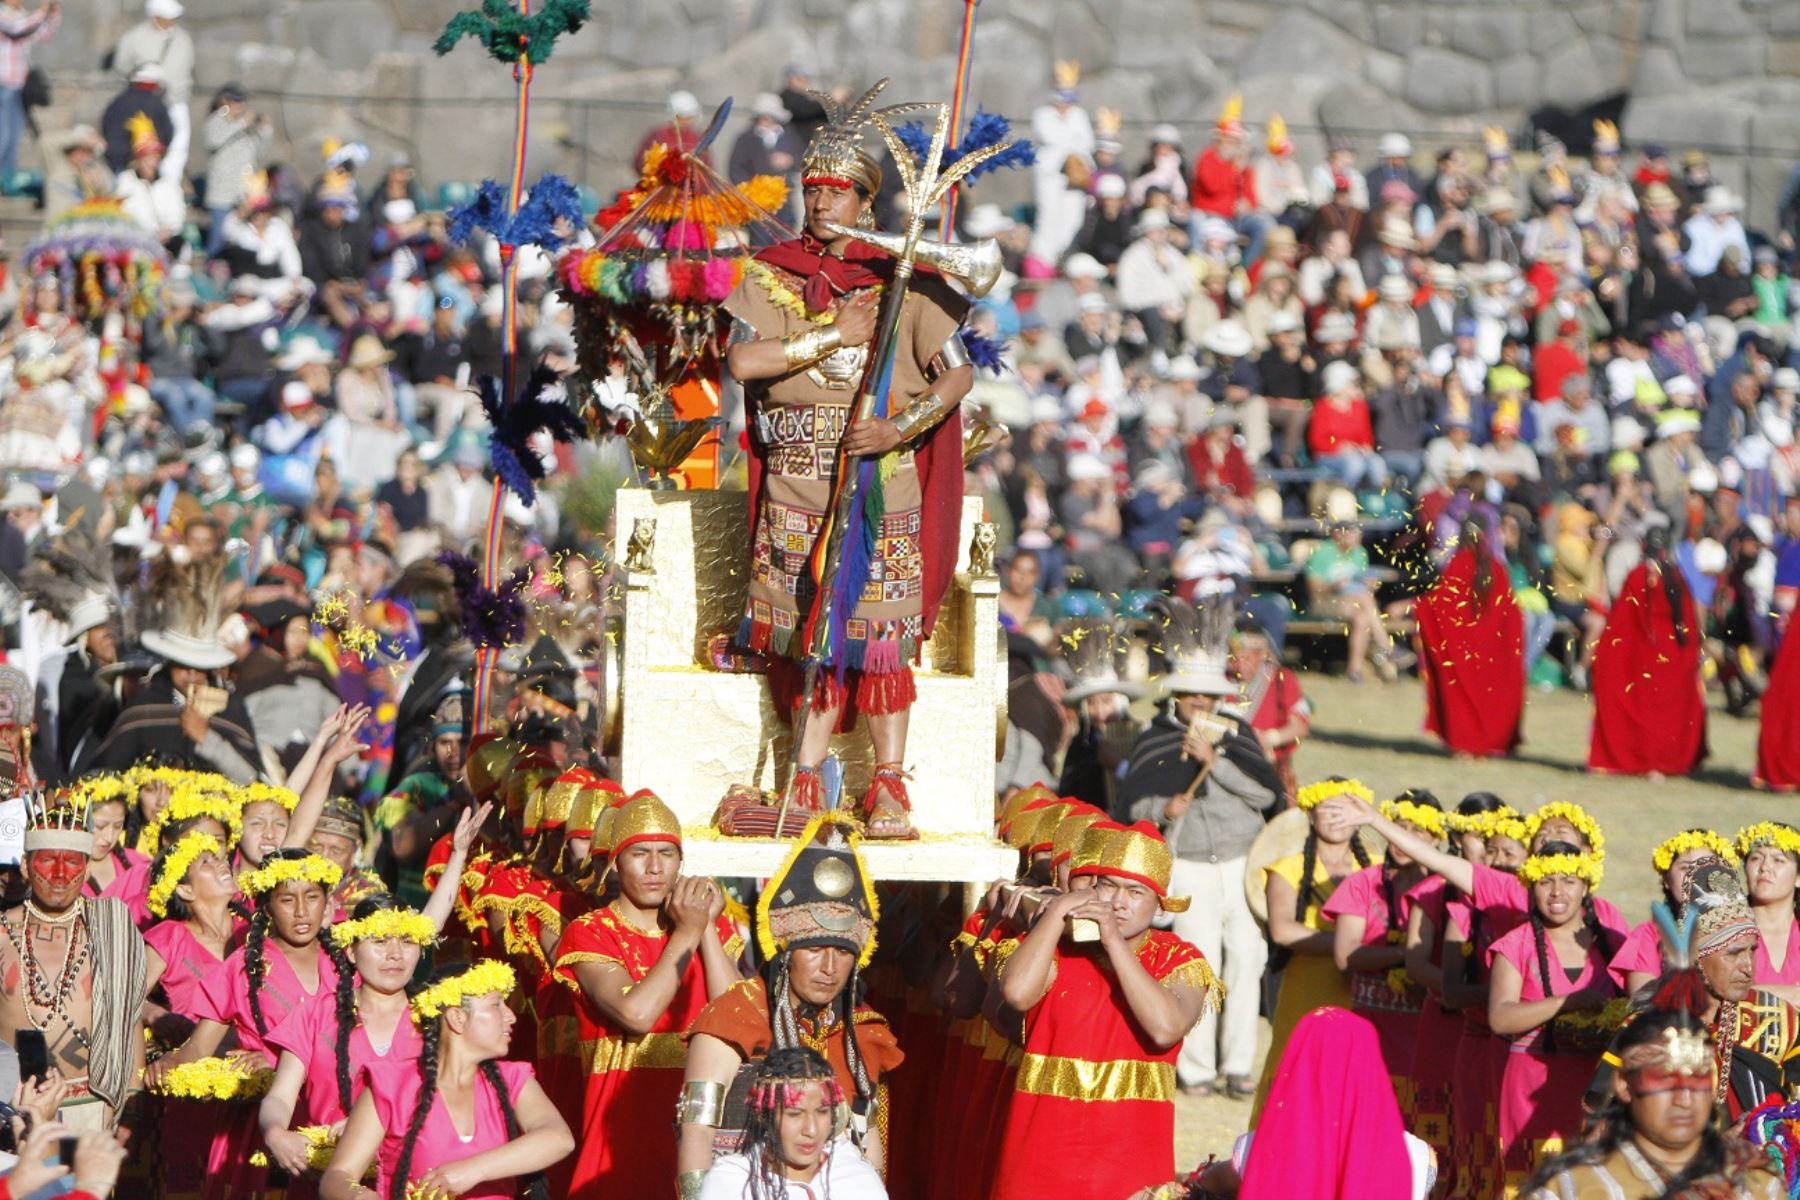 Emufec incrementa costo de boletos para ver la escenificación del Inti Raymi en Cusco. ANDINA/Percy Hurtado